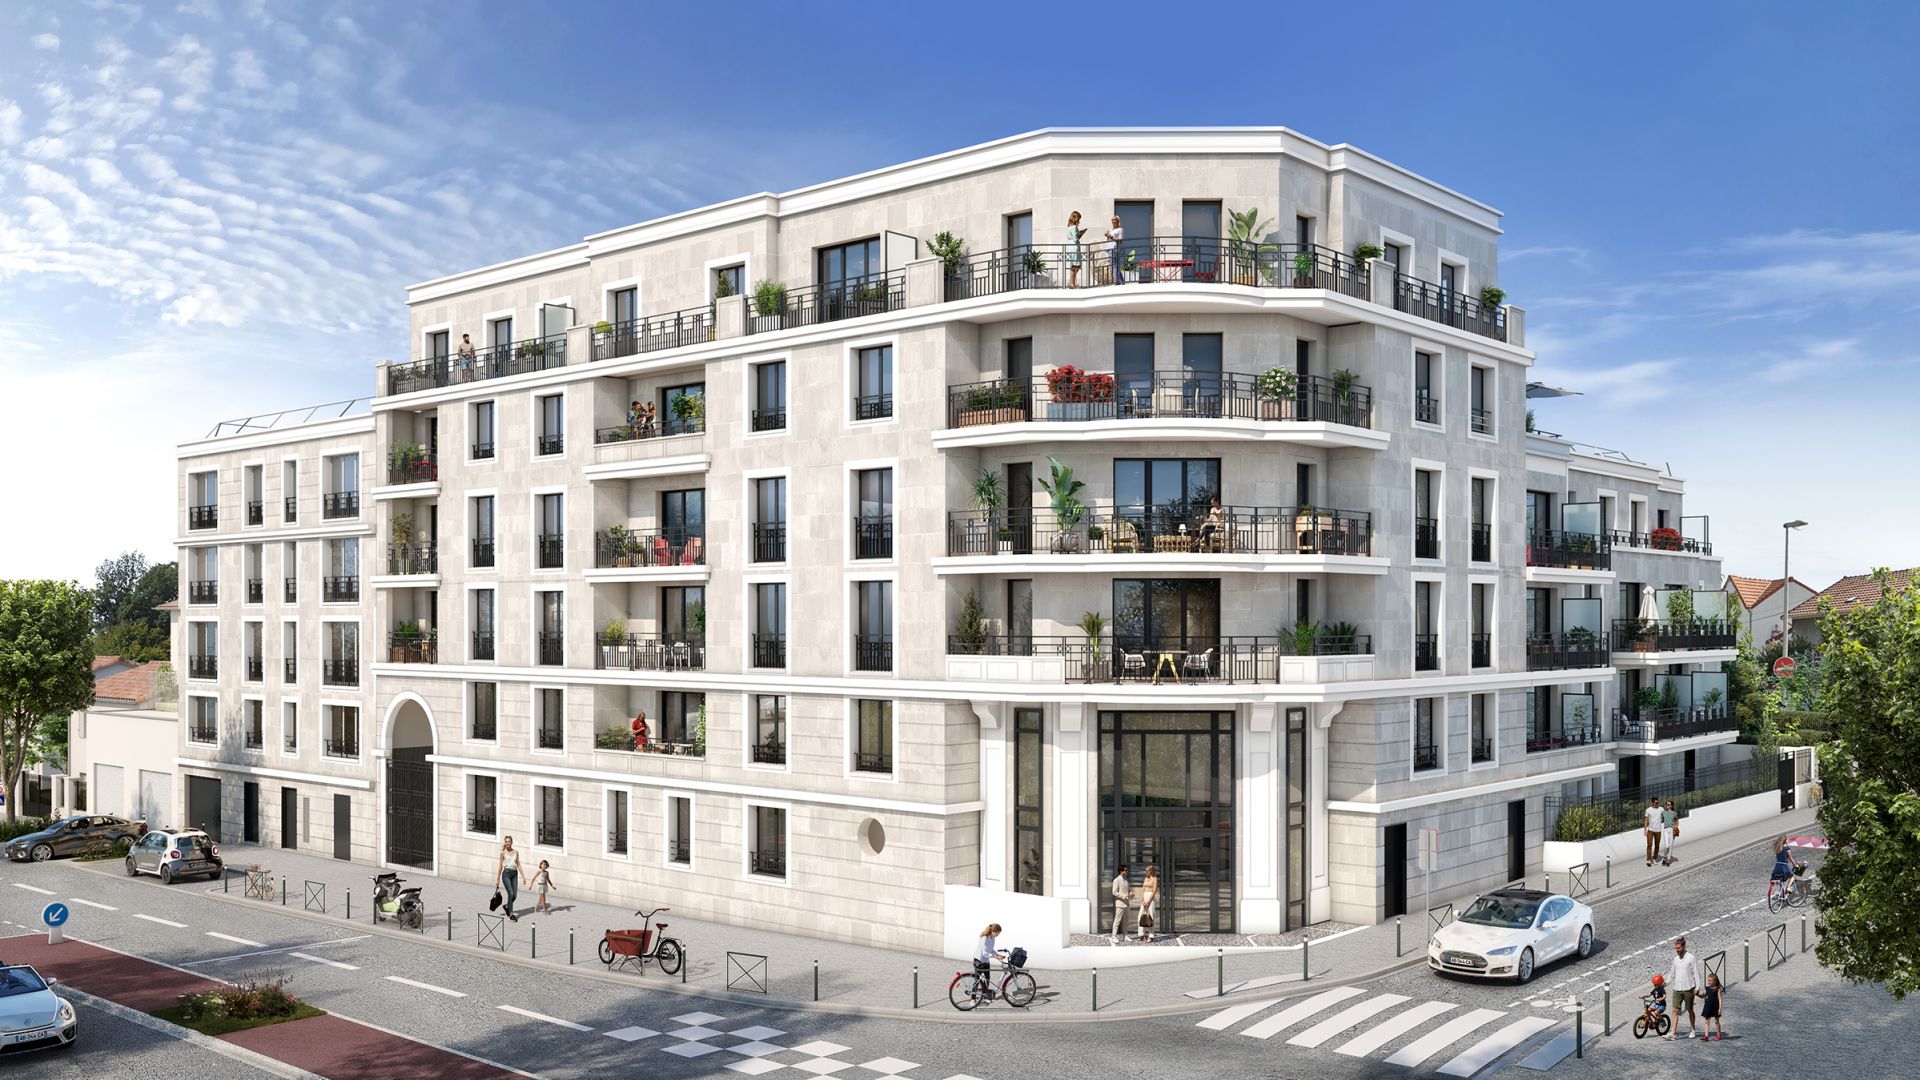 Greencity immobilier - achat appartements neufs du T1 au T4 - Résidence Le Boréal - 94170 - Le Perreux-sur-Marne